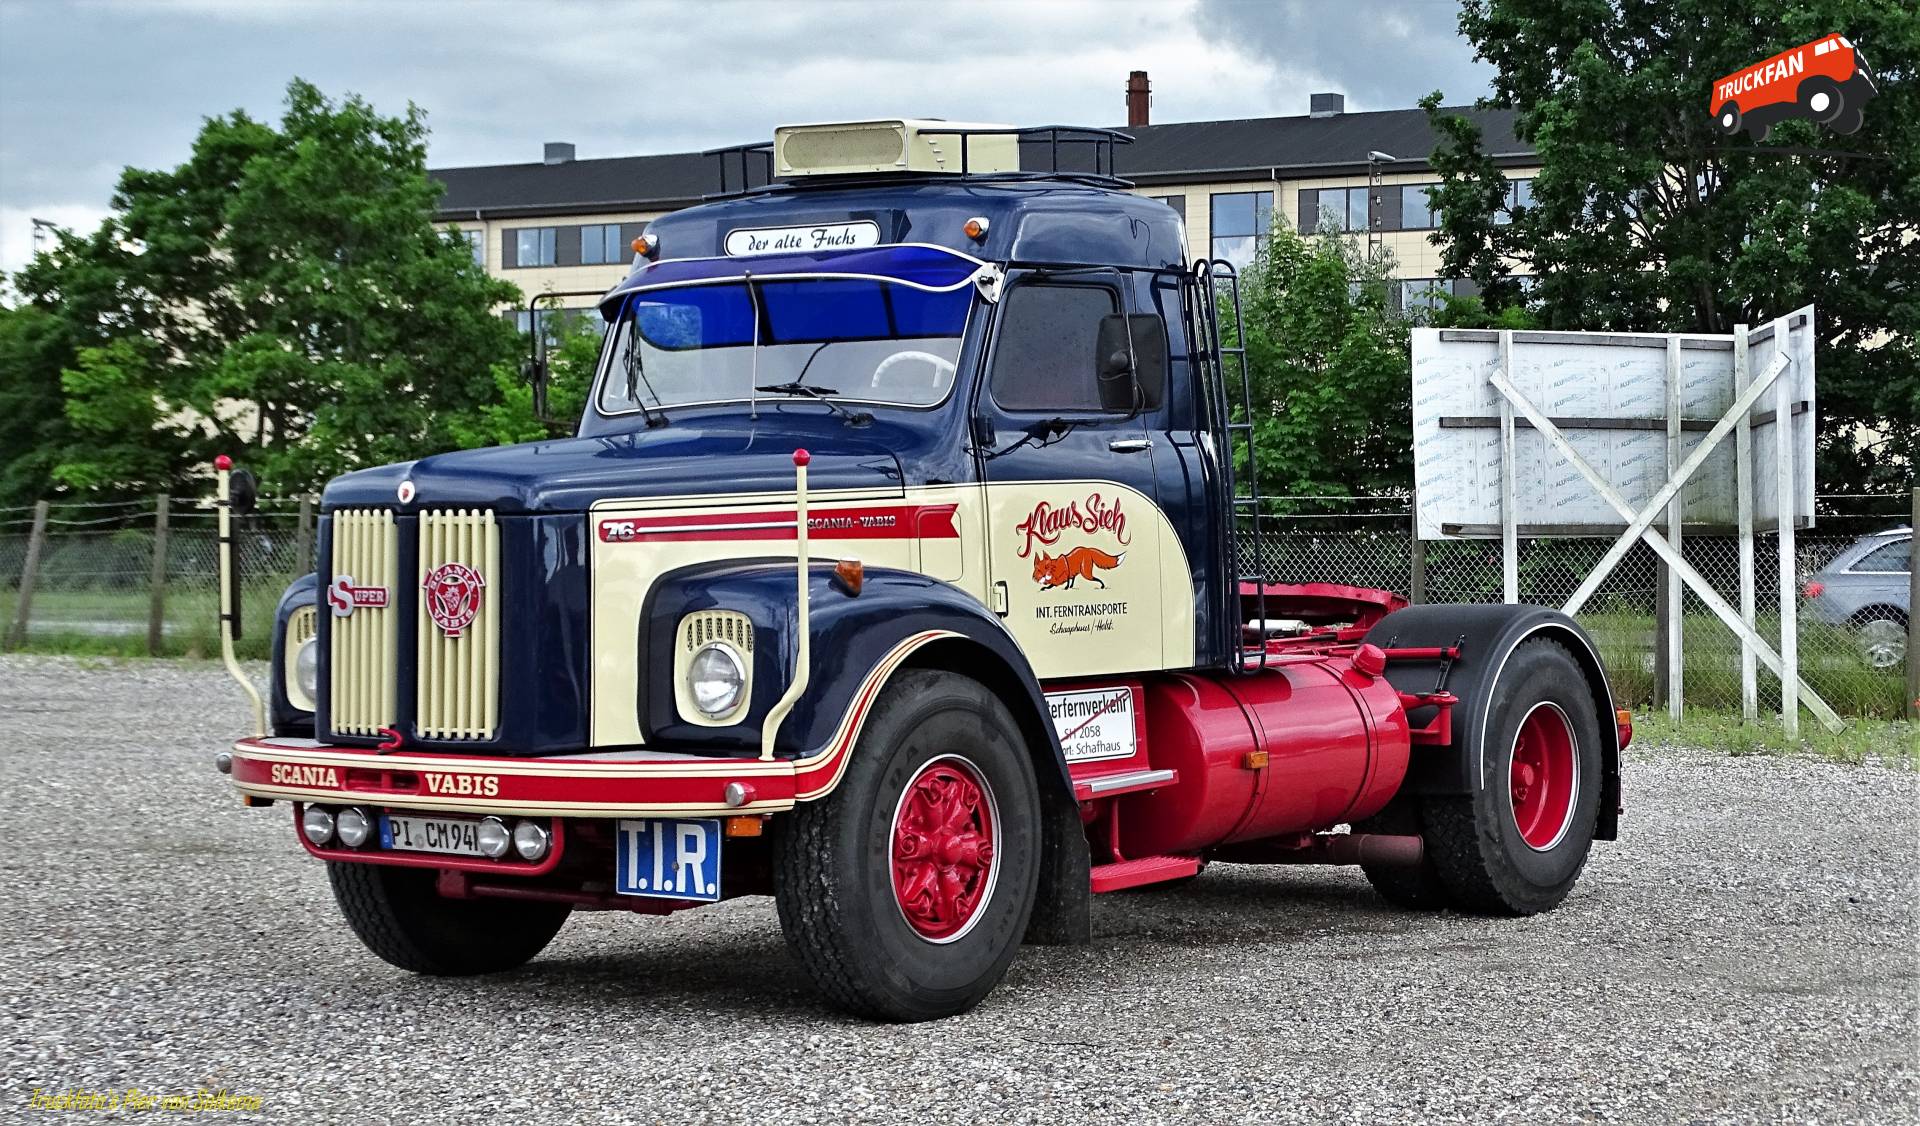 Scania-Vabis L76